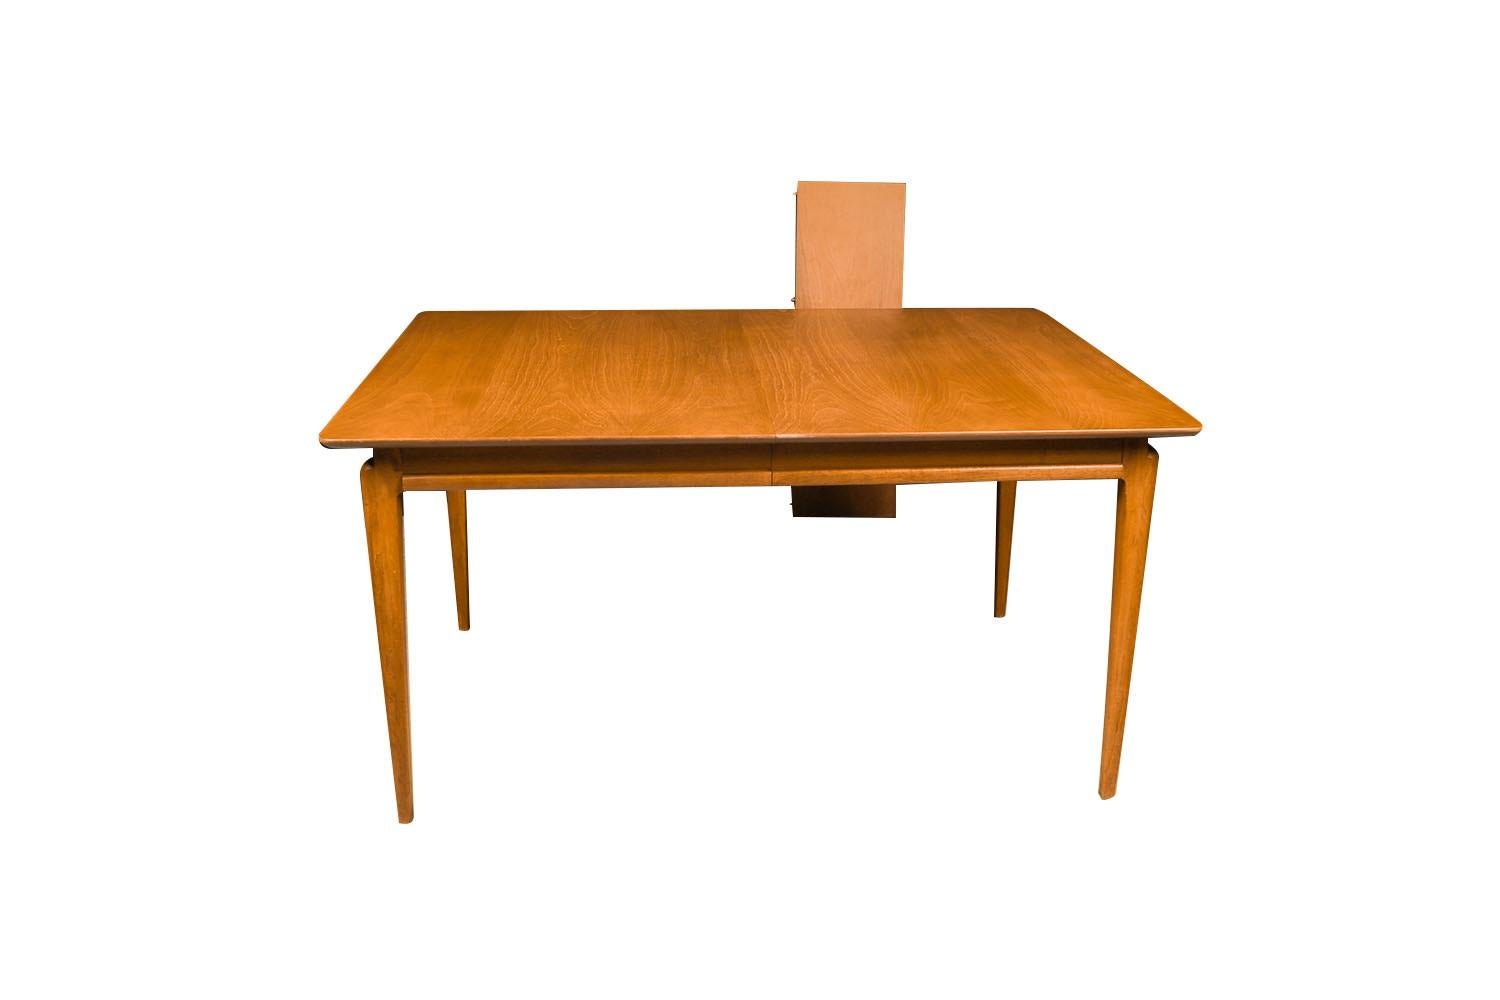 Superbe table à manger vintage en noyer de style Mid-Century Modern en excellent état d'origine, conçue par John Van Koert pour la ligne Drexel Projection, vers les années 1950. Le dessus est sculpté, un design simple mais sophistiqué. Surélevée sur